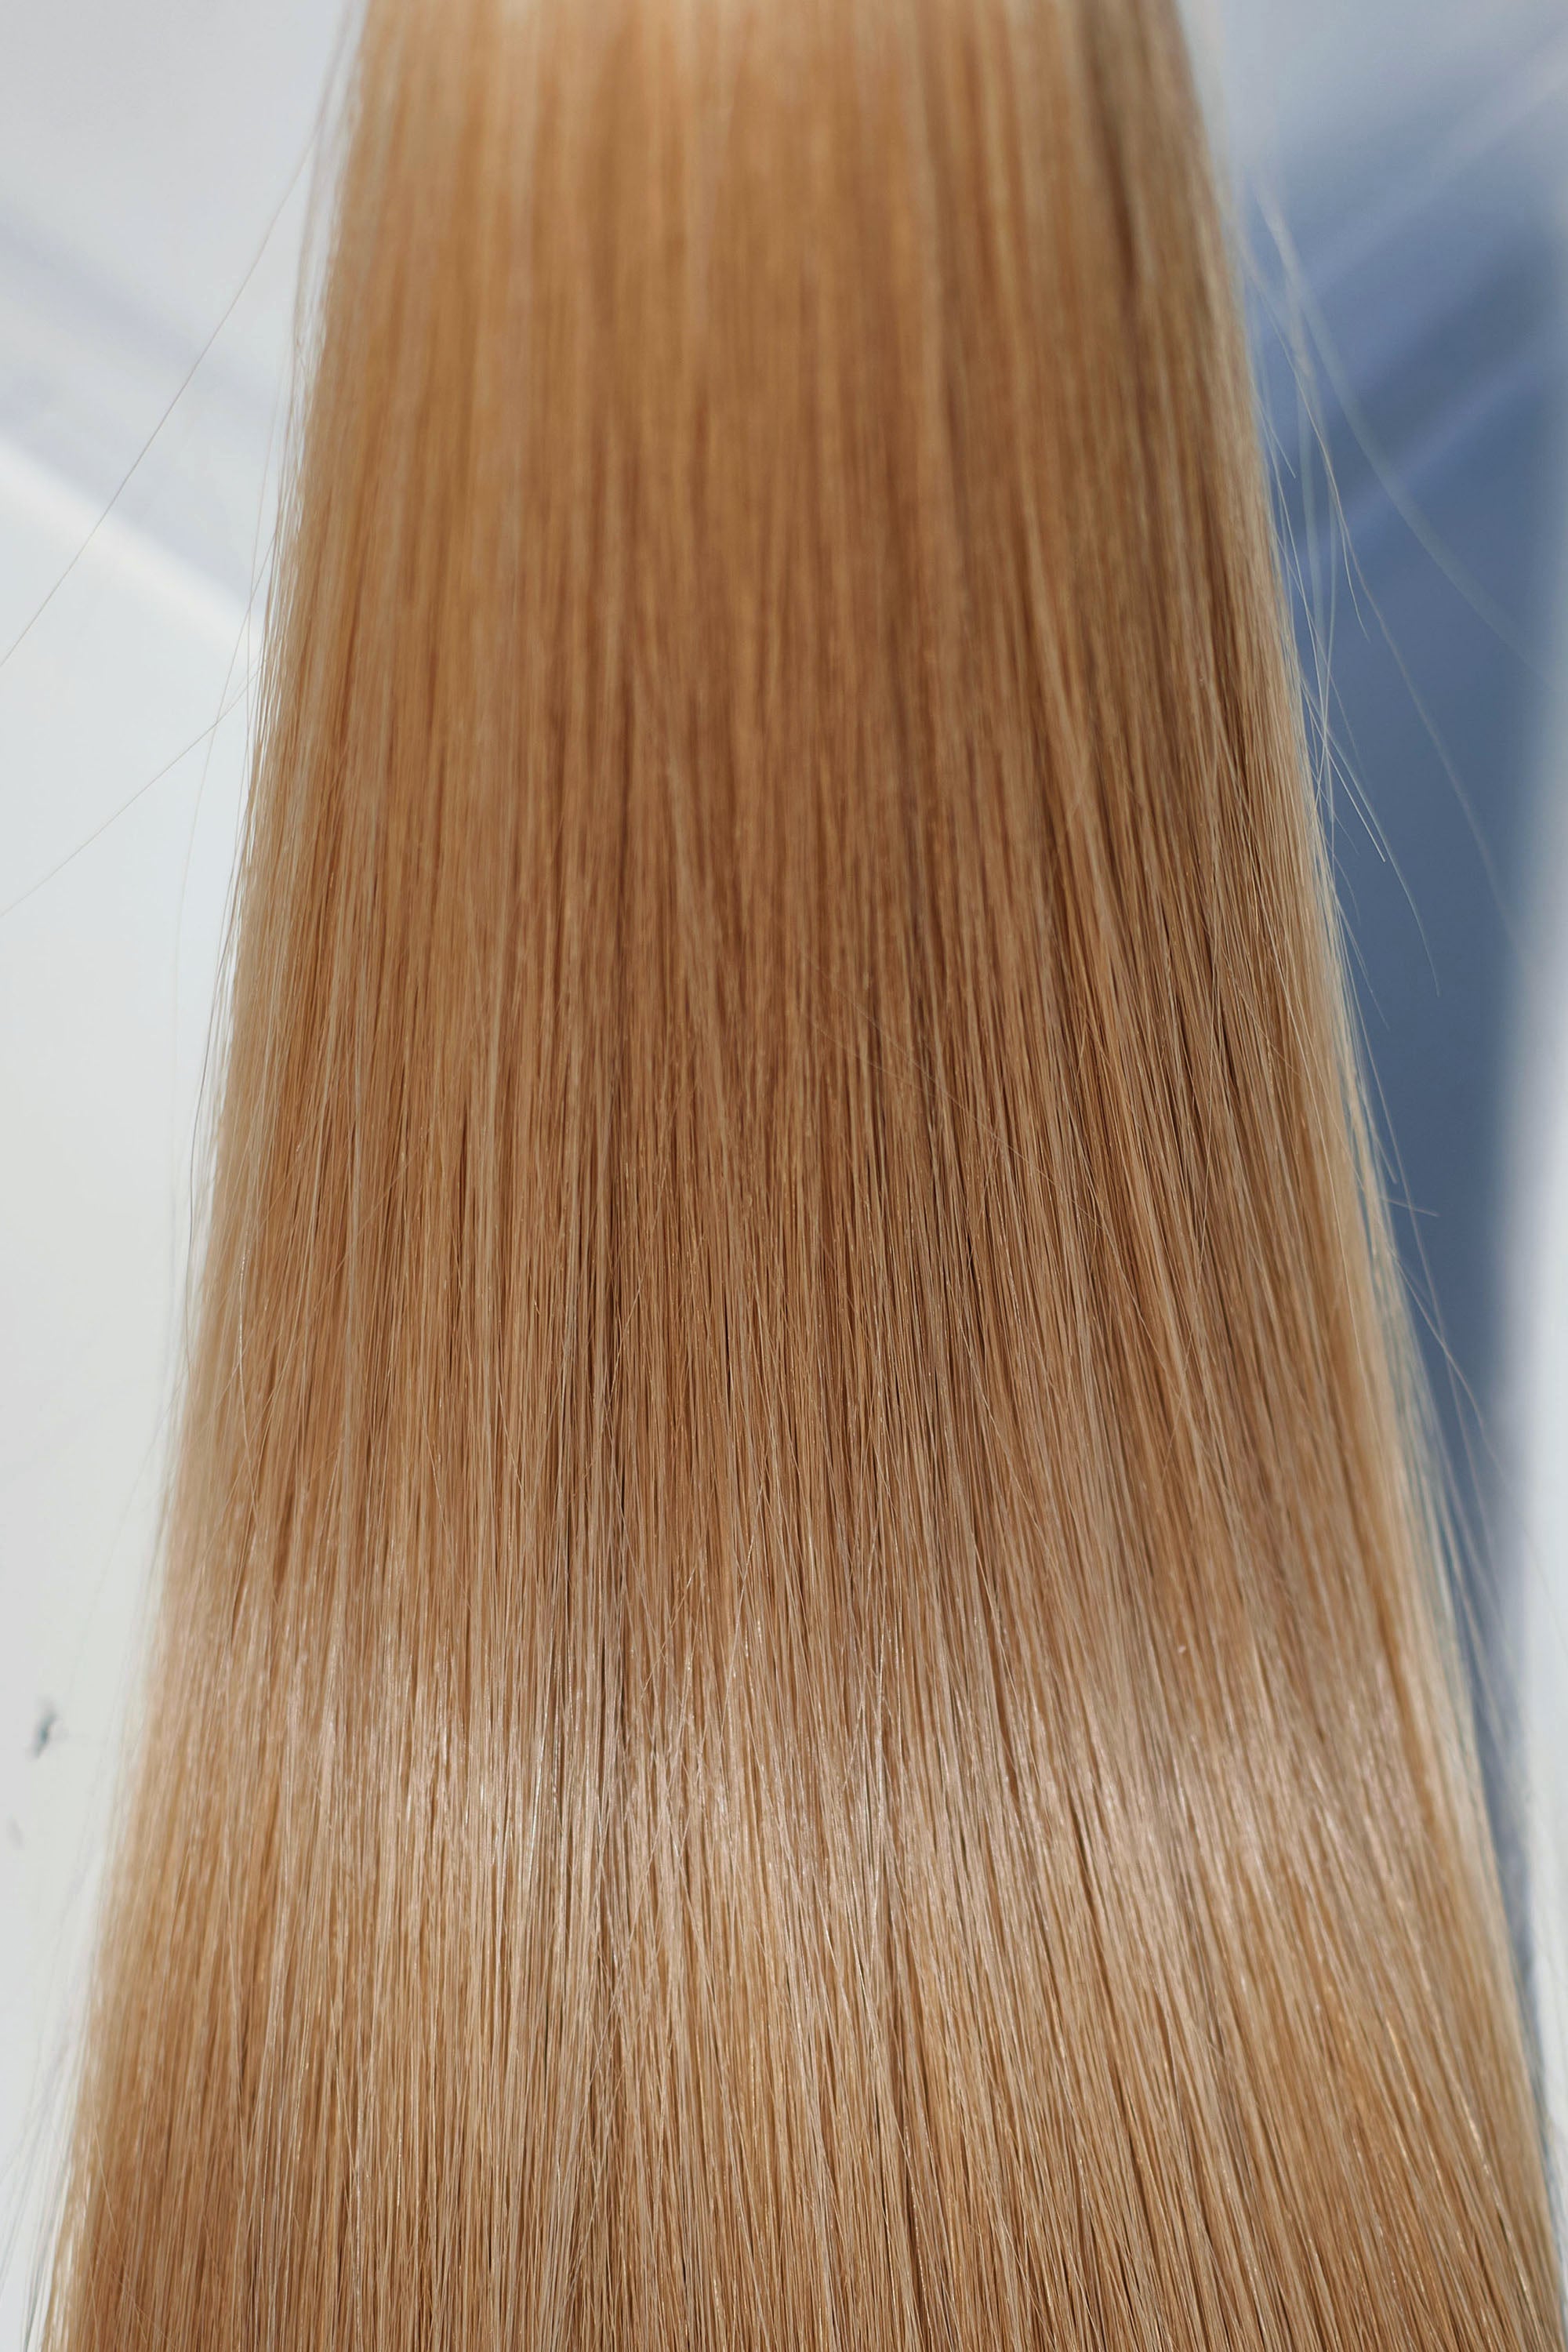 Behair professional Bulk hair "Premium" 24" (60cm) Natural Straight Gold Sand #18 - 25g hair extensions